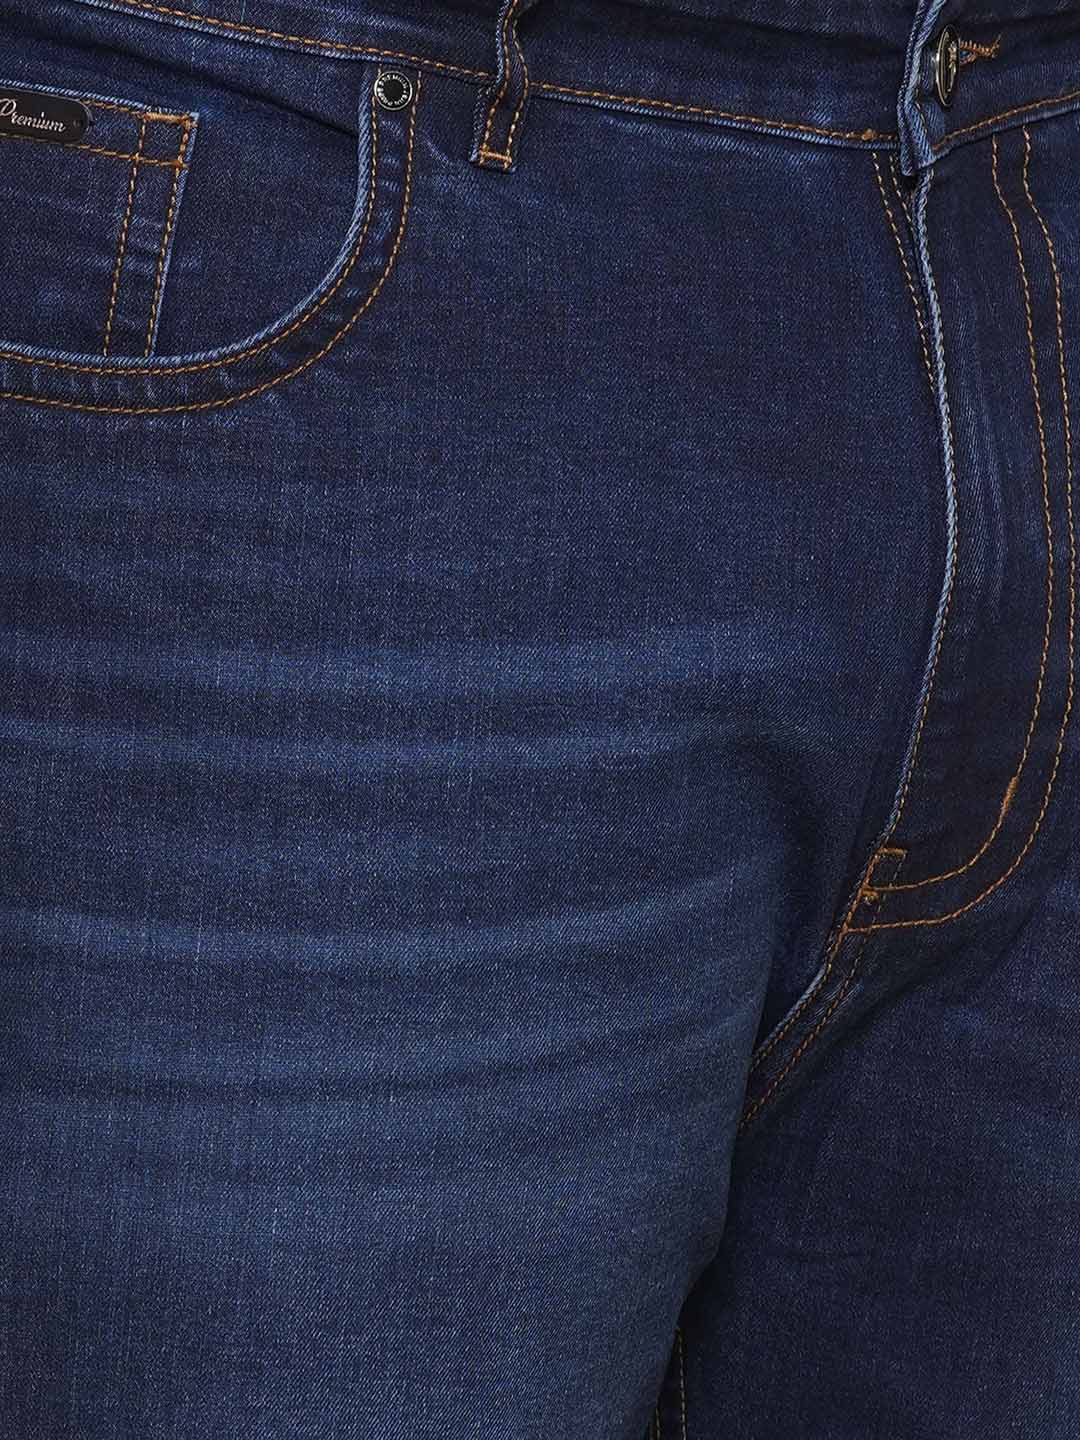 bottomwear/jeans/PJPJ60102/pjpj60102-2.jpg